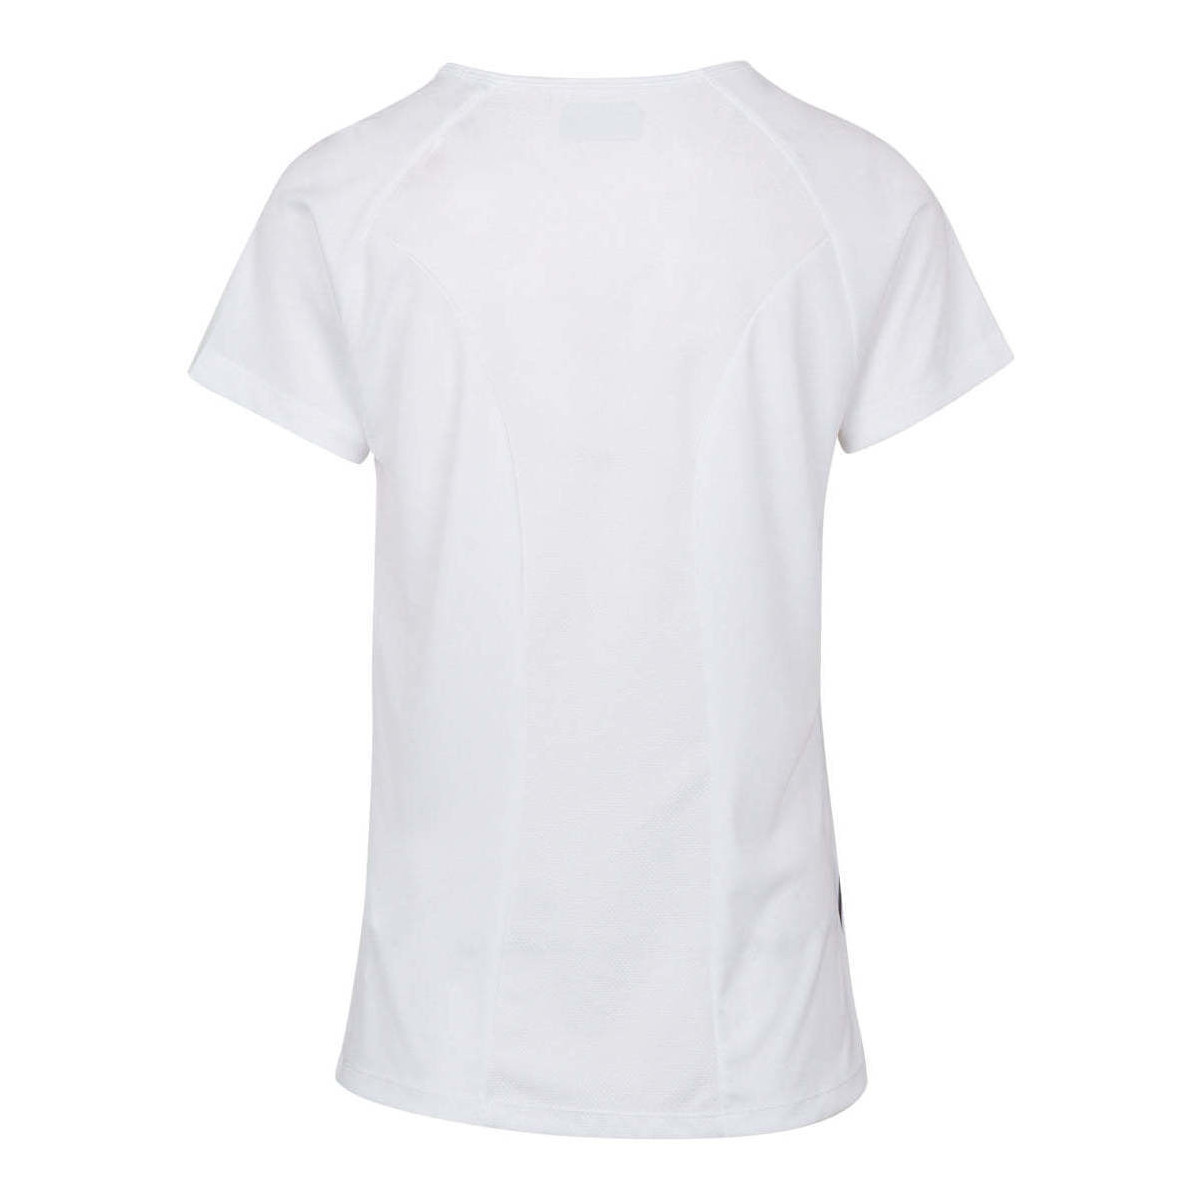 Kappa Blanc T-shirt Fania F10xRfnl